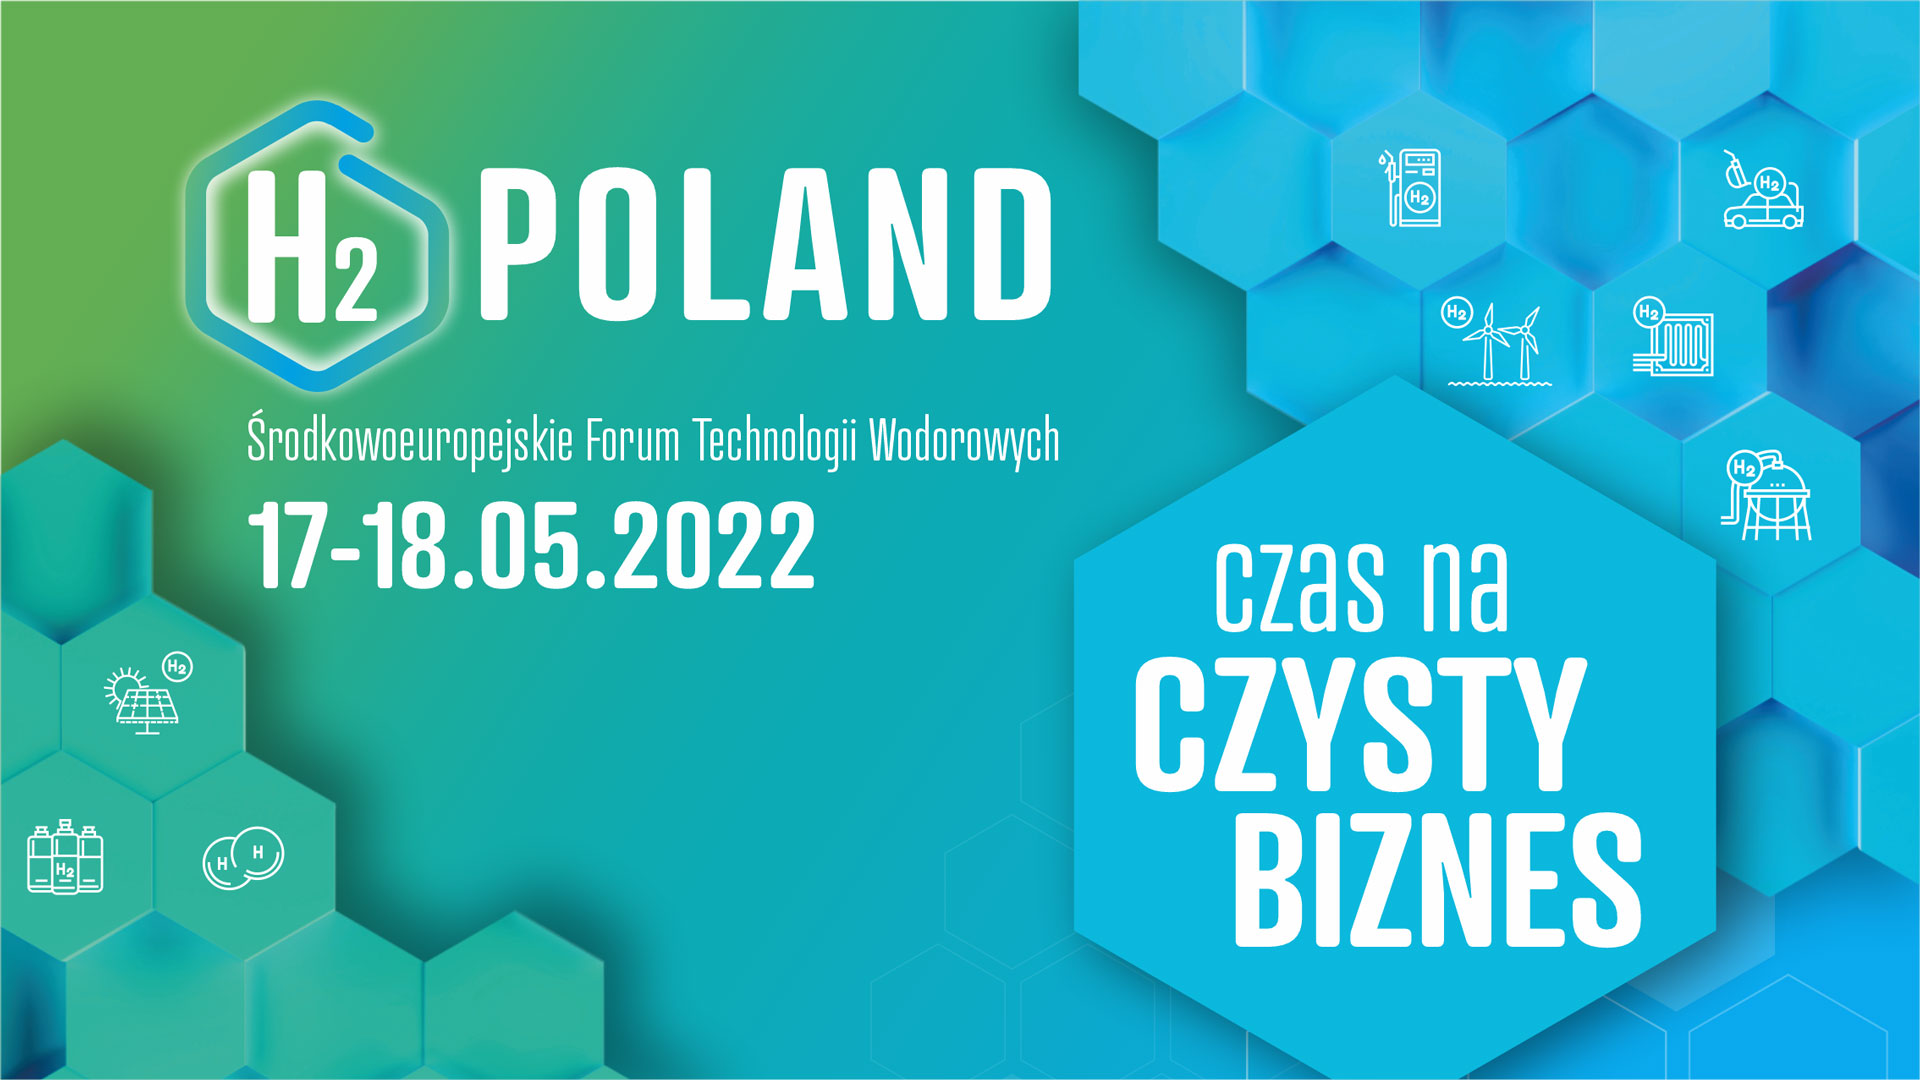 I Środkowoeuropejskie Forum Technologii Wodorowych H2Poland